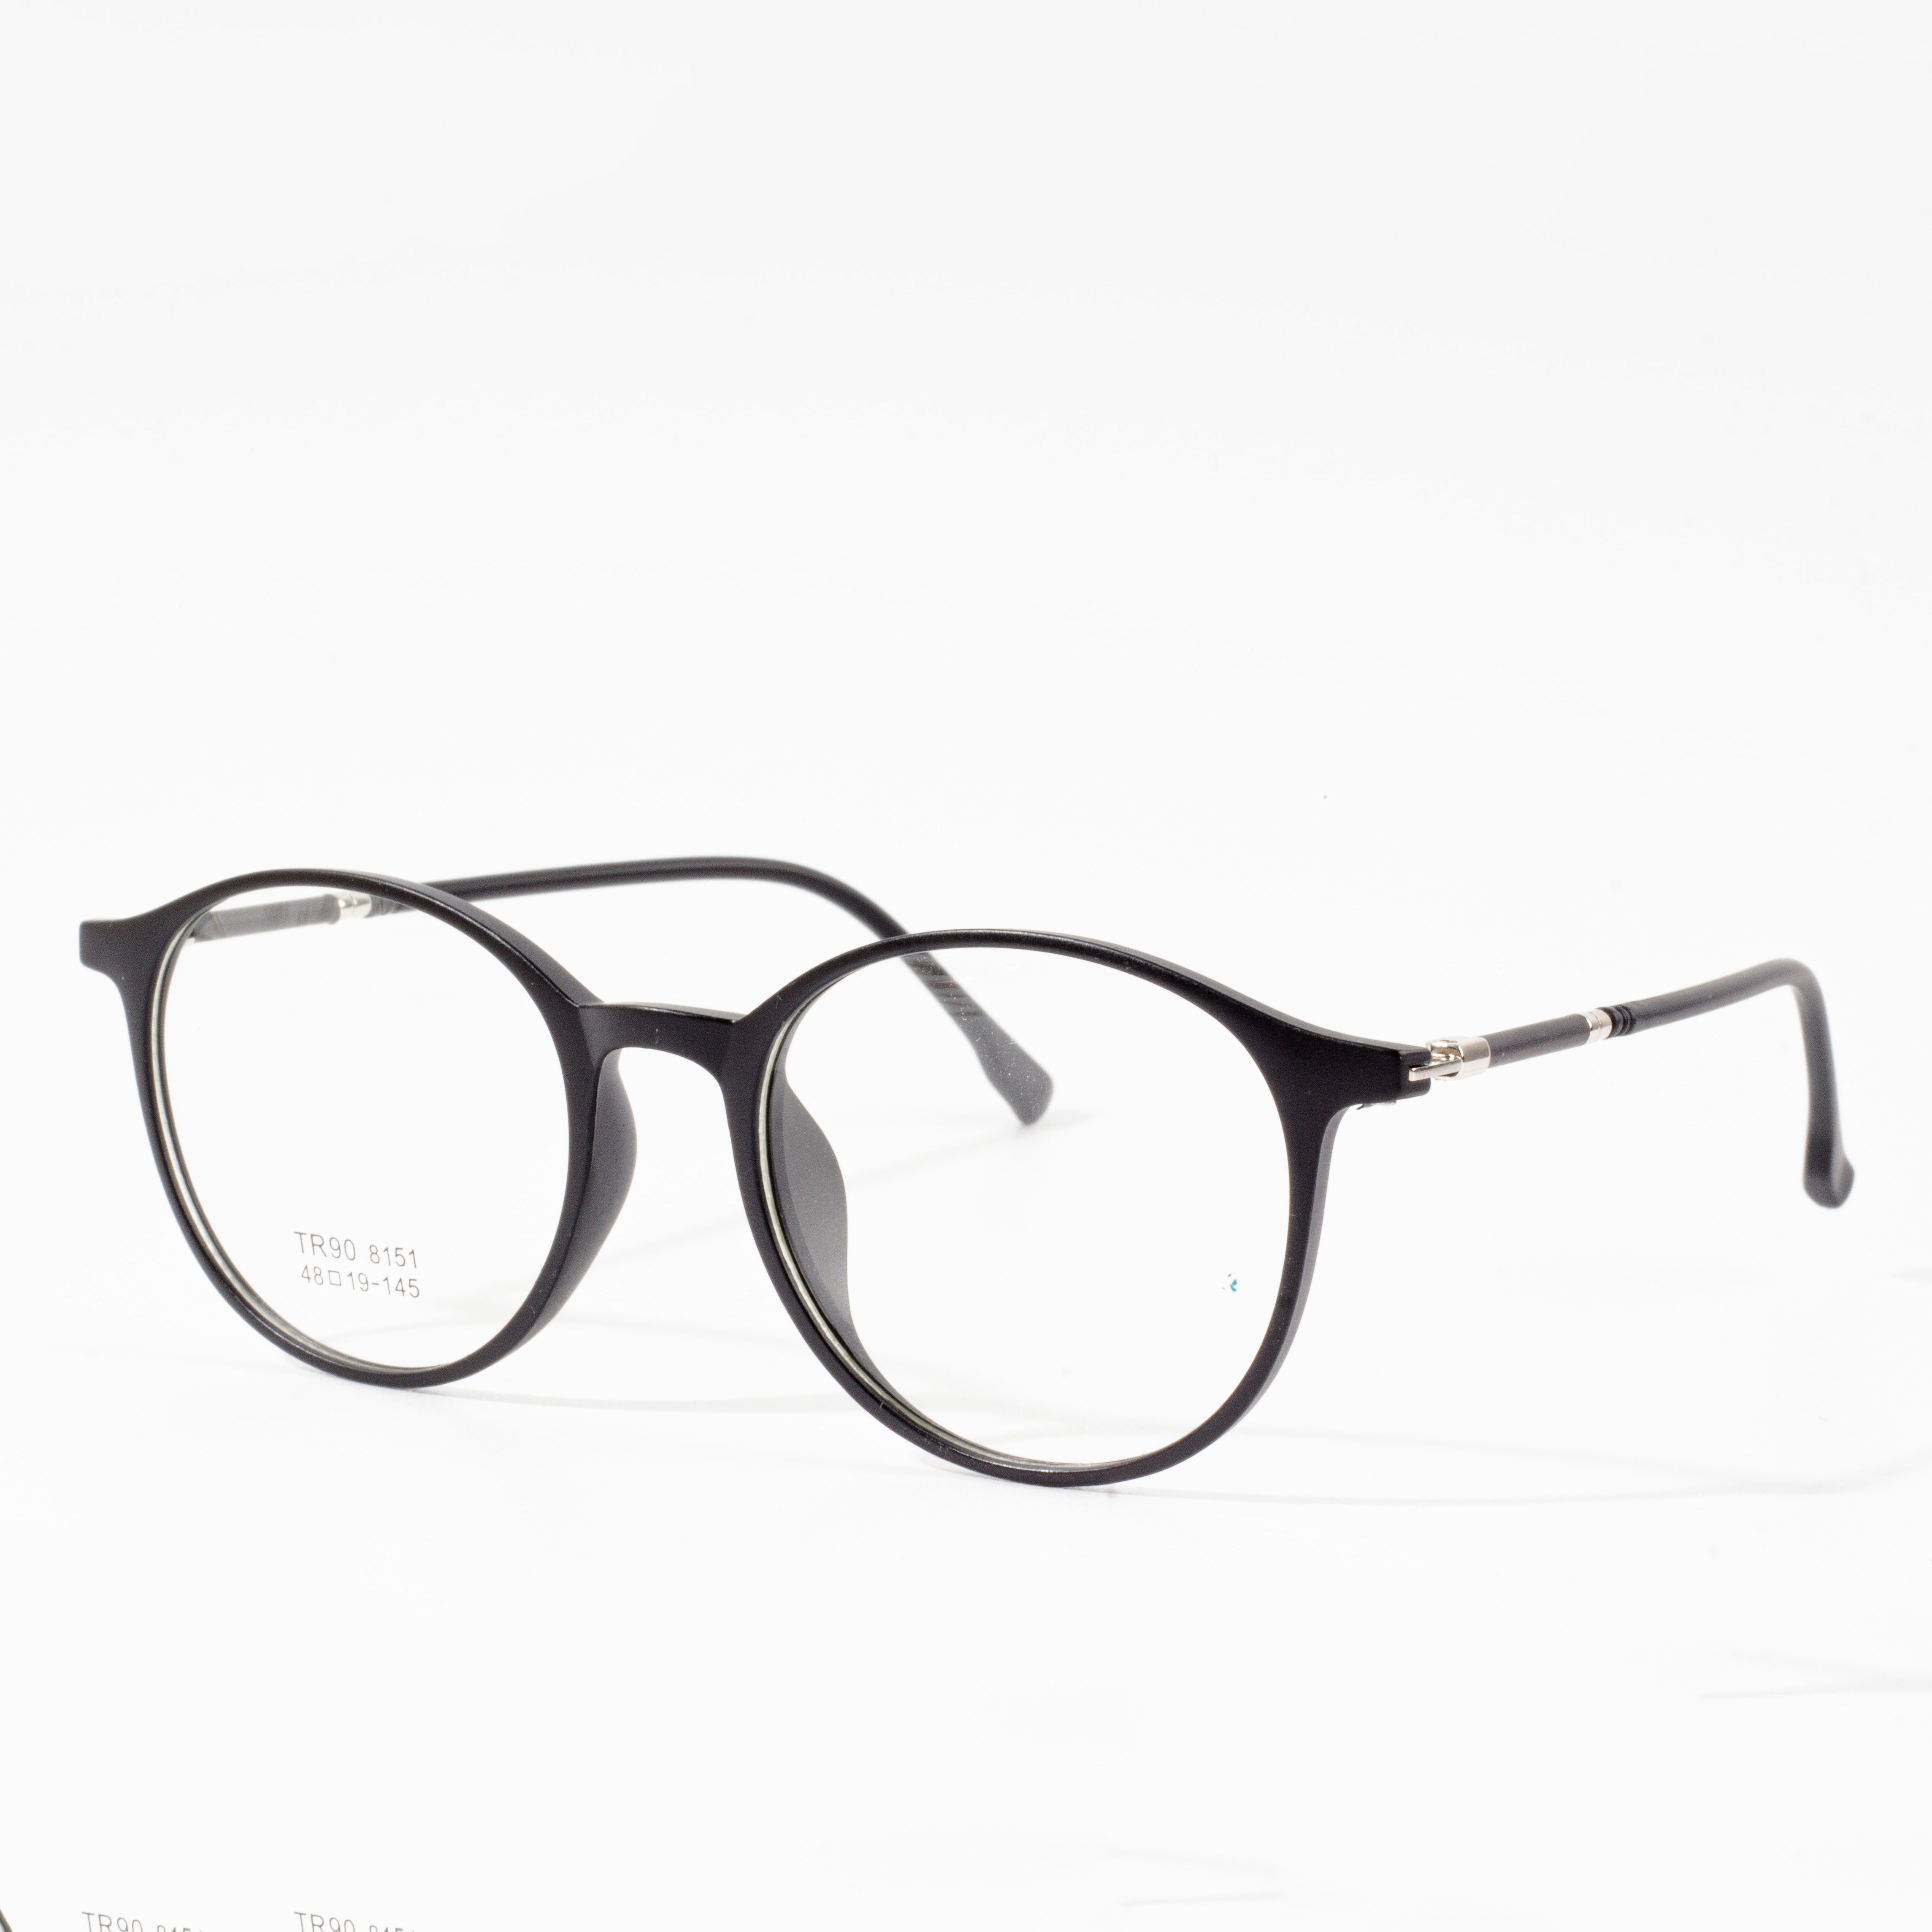 Gọng kính thiết kế dành cho nam và nữ - Eyeglasses.com 广告· https://www.eyeglasses.com/ (888) 896-3885 Mua sắm gọng kính thiết kế từ các thương hiệu kính mắt hàng đầu toàn cầu với giá bán lẻ giảm một nửa ngay hôm nay.